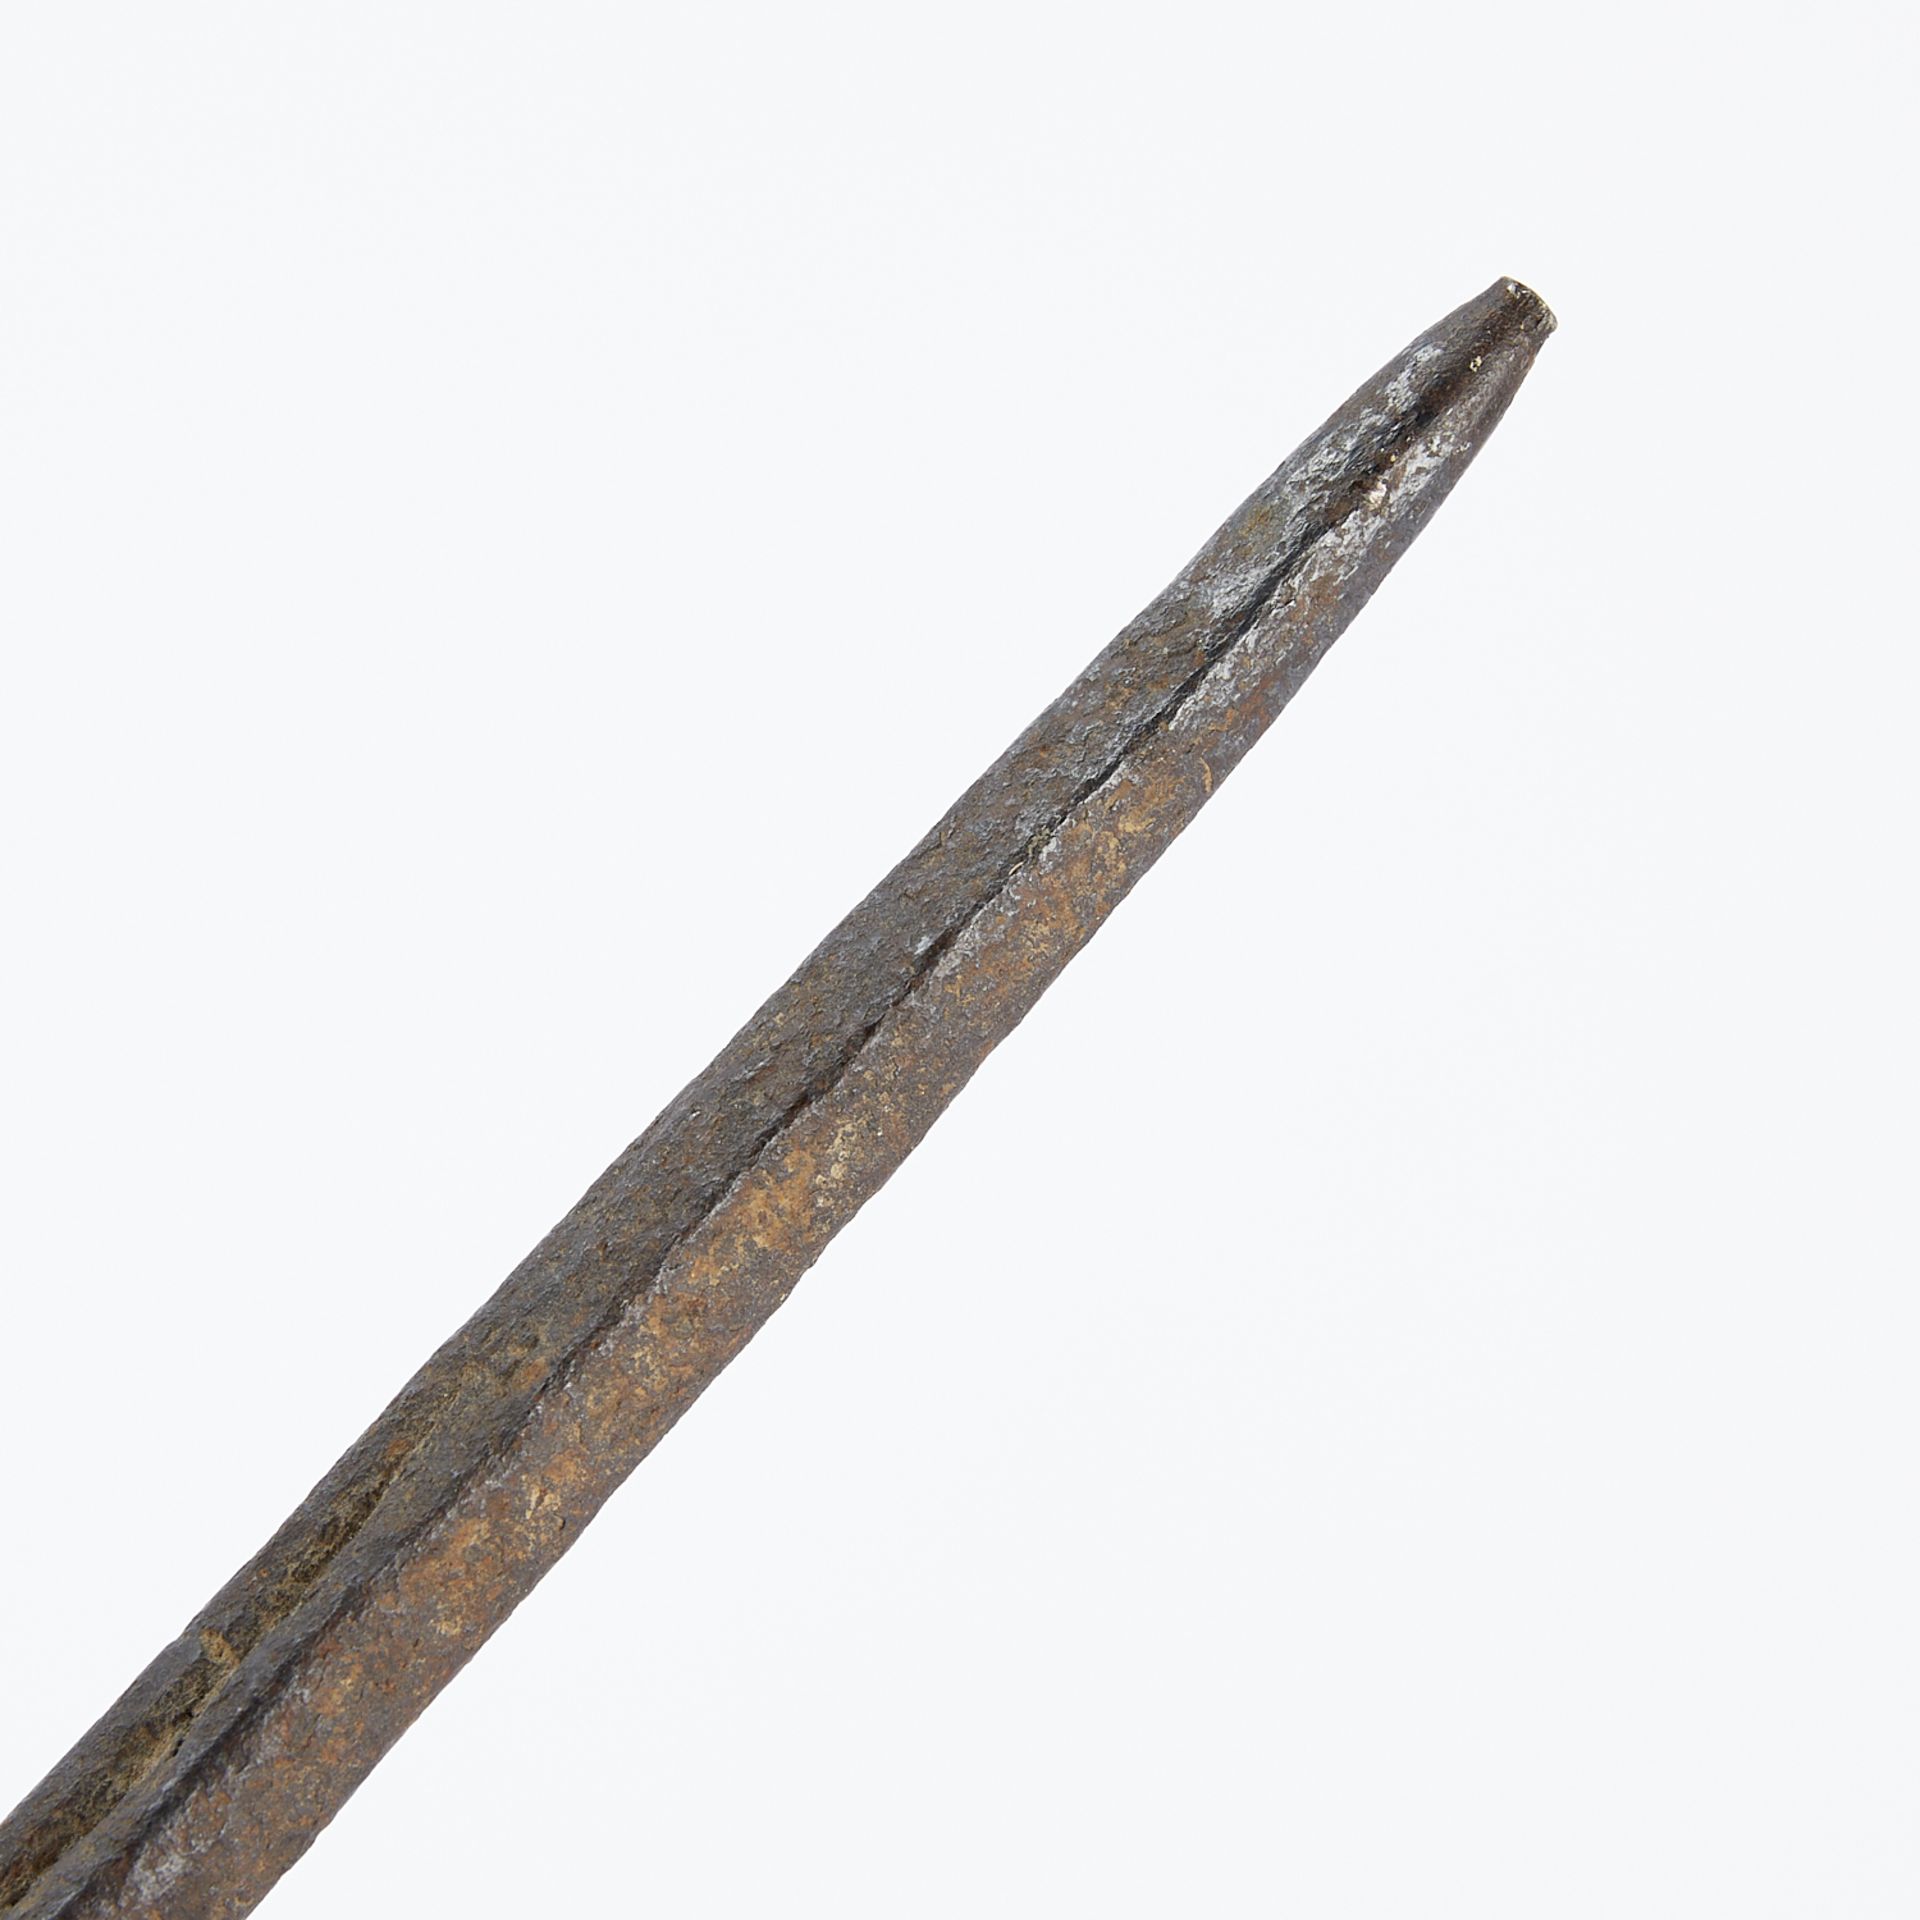 2 Wrought Iron Pcs - Pike & Matchlock - Image 5 of 7